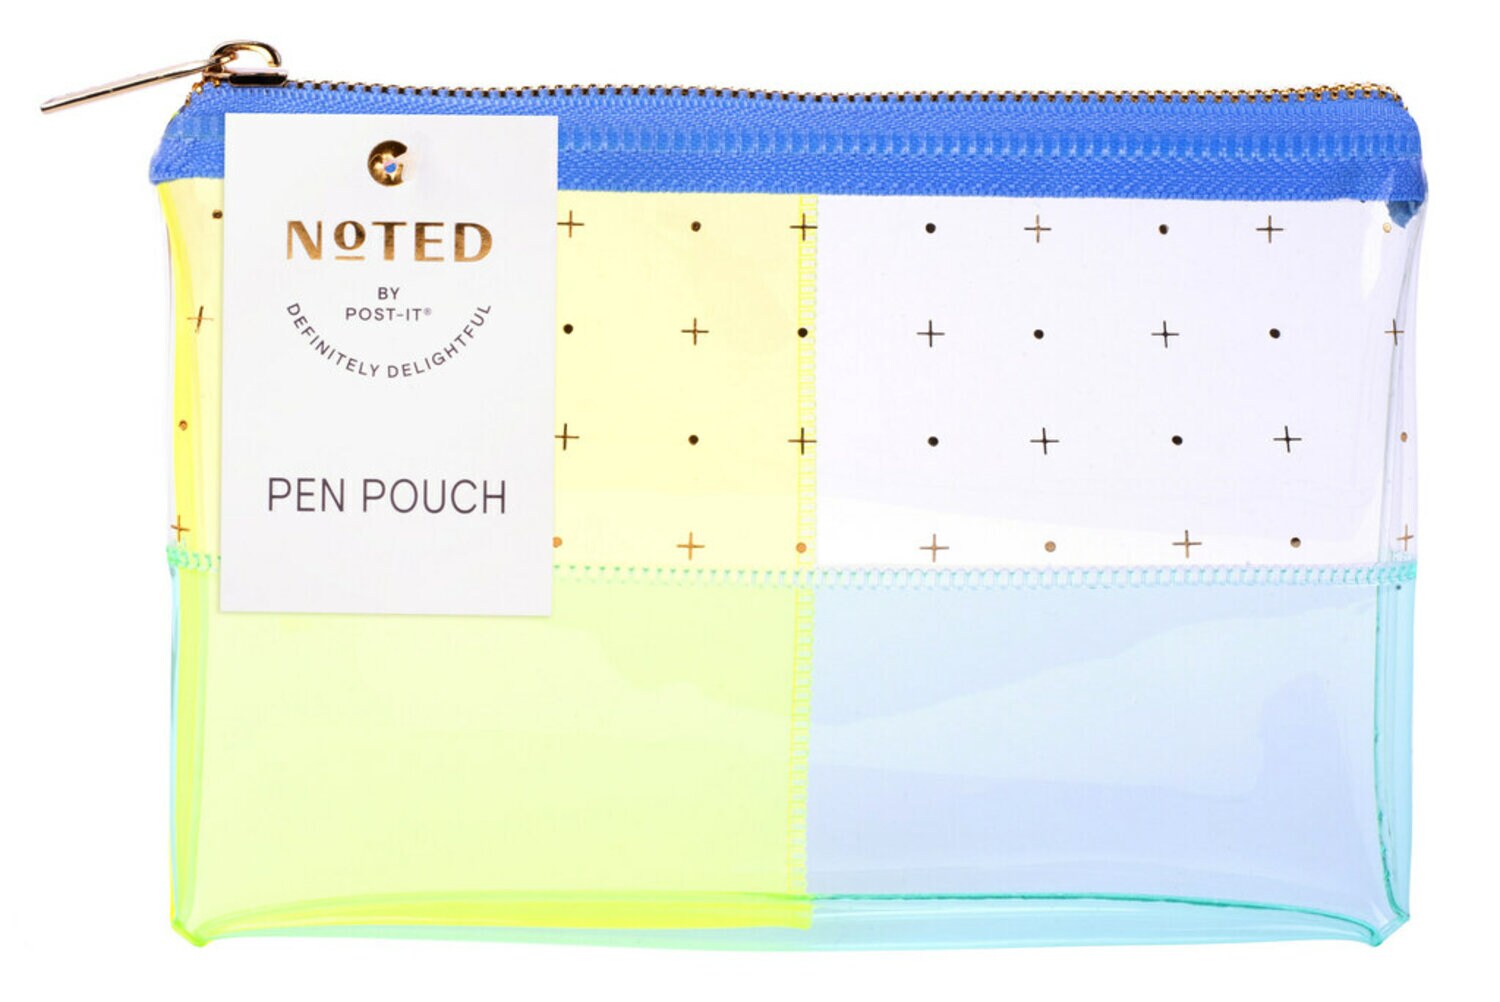 7100264924 - Post-it Pen Pouch NTD5-PP-DOT, One Pen Pouch